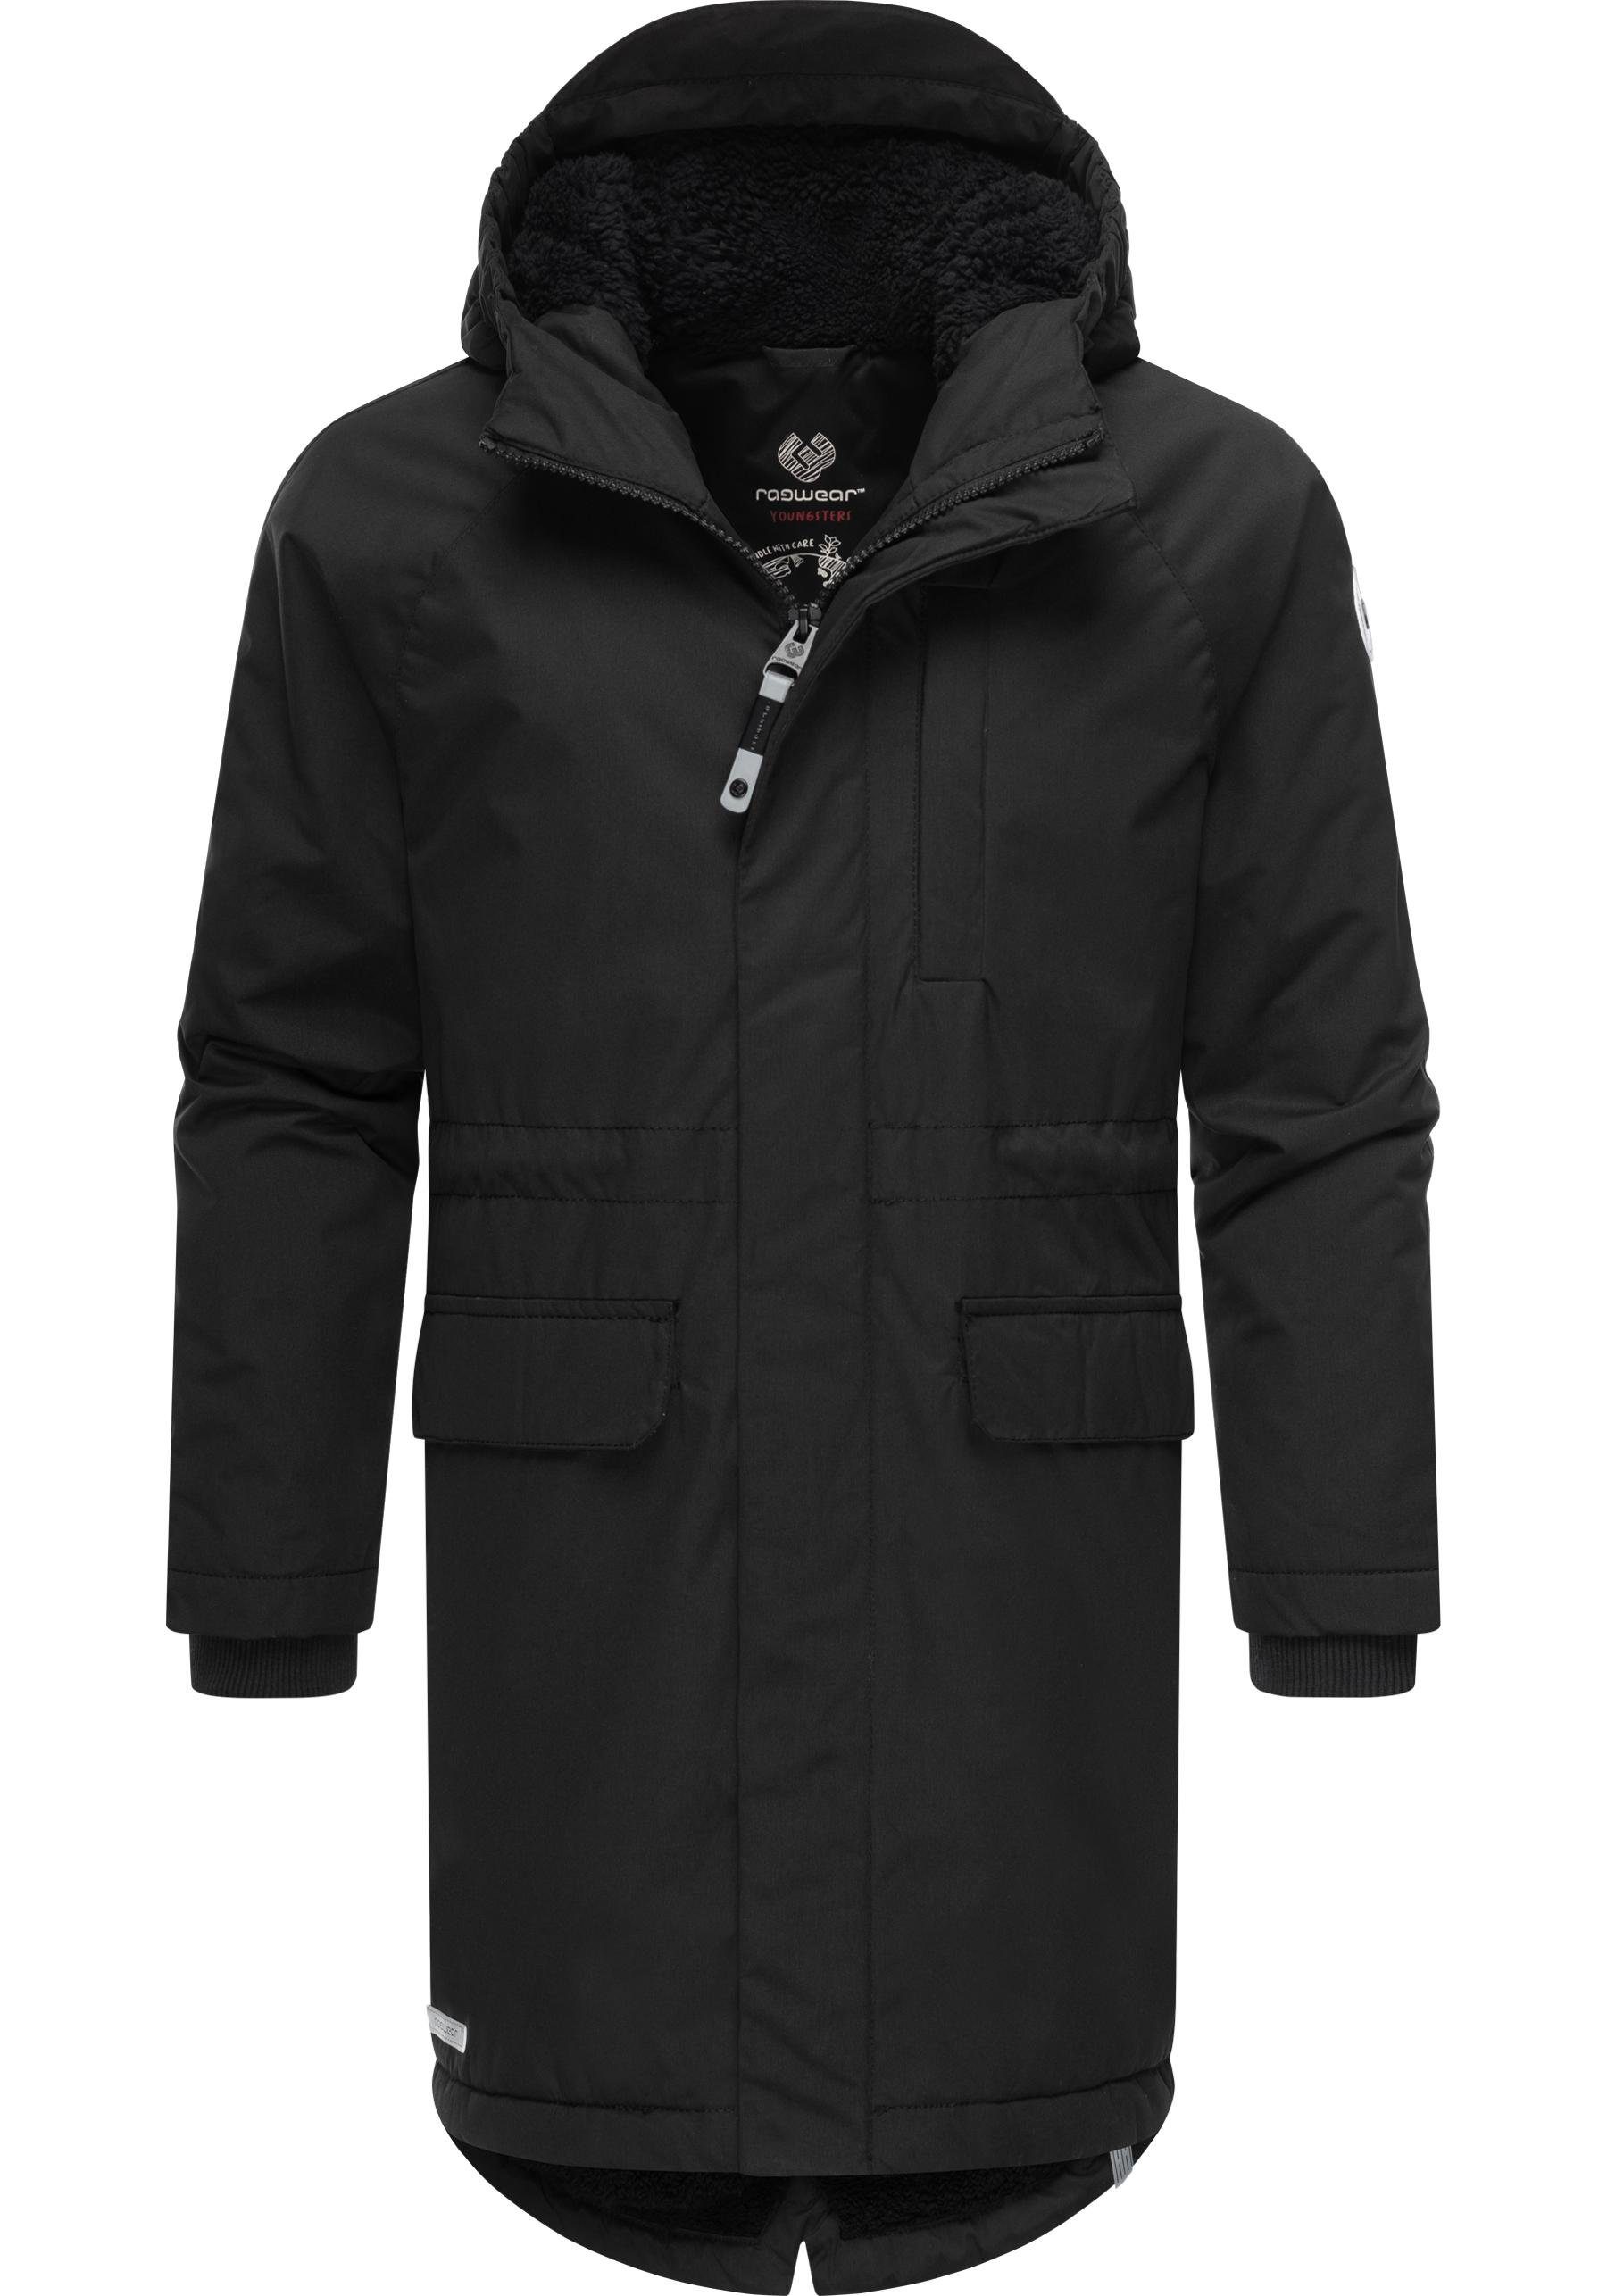 Ragwear Winterjacke Uniparka B Jacke mit flauschig warmem Teddyfell-Innenfutter schwarz | Übergangsjacken